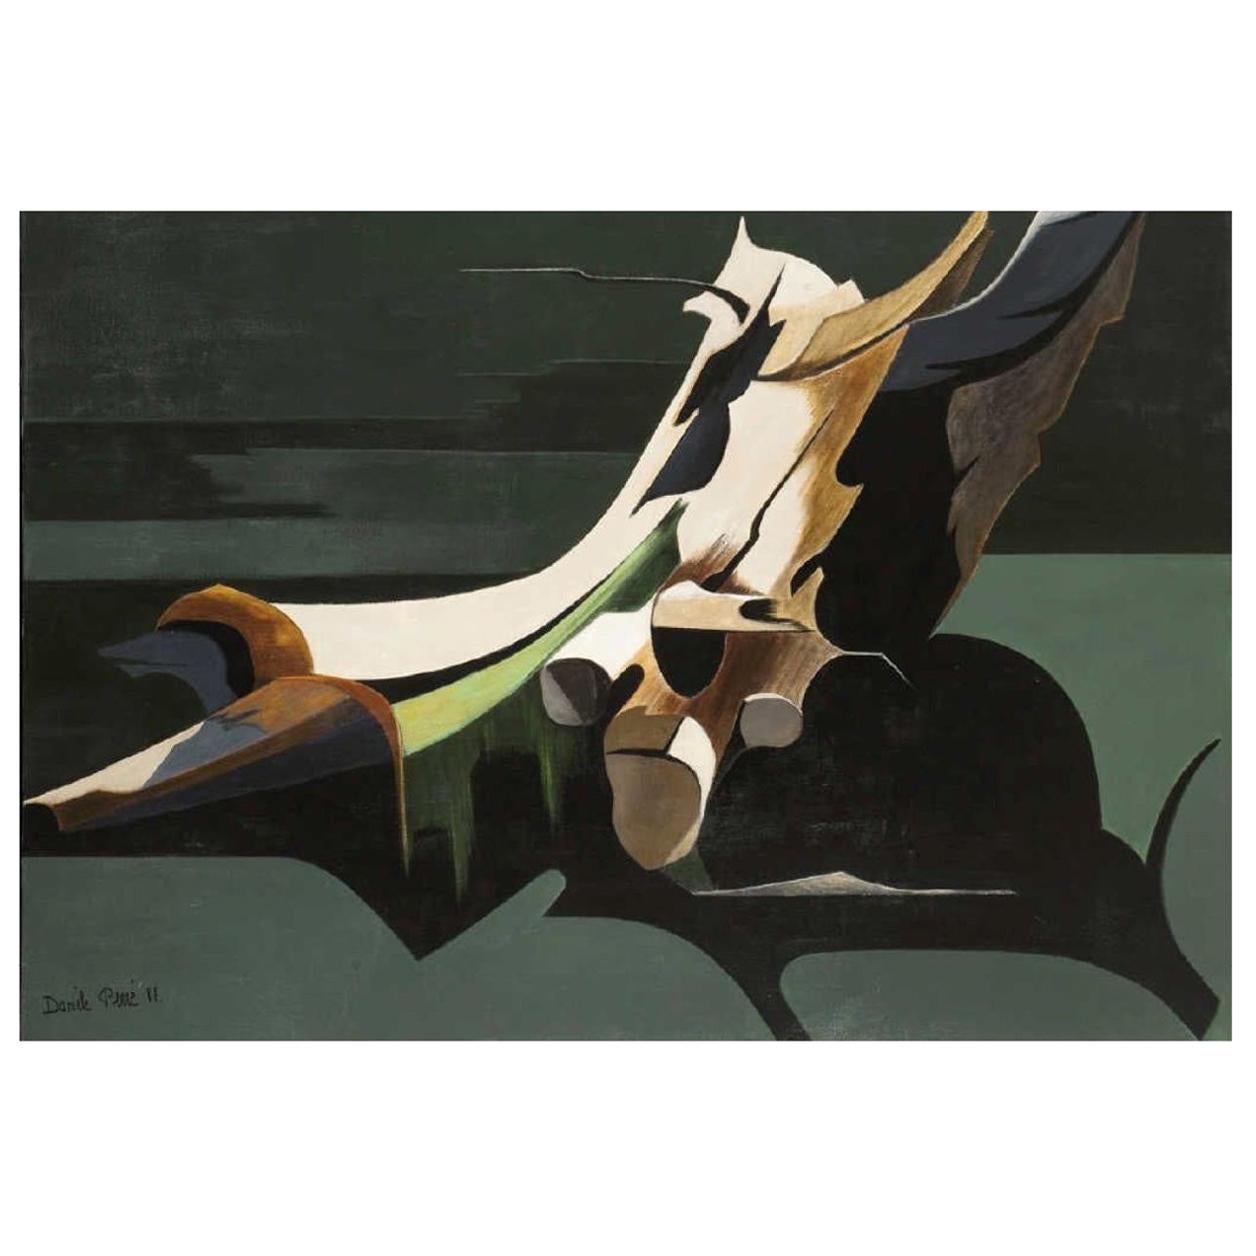 Daniele Perre "La fuite immobile" Oil on Canvas, 1988